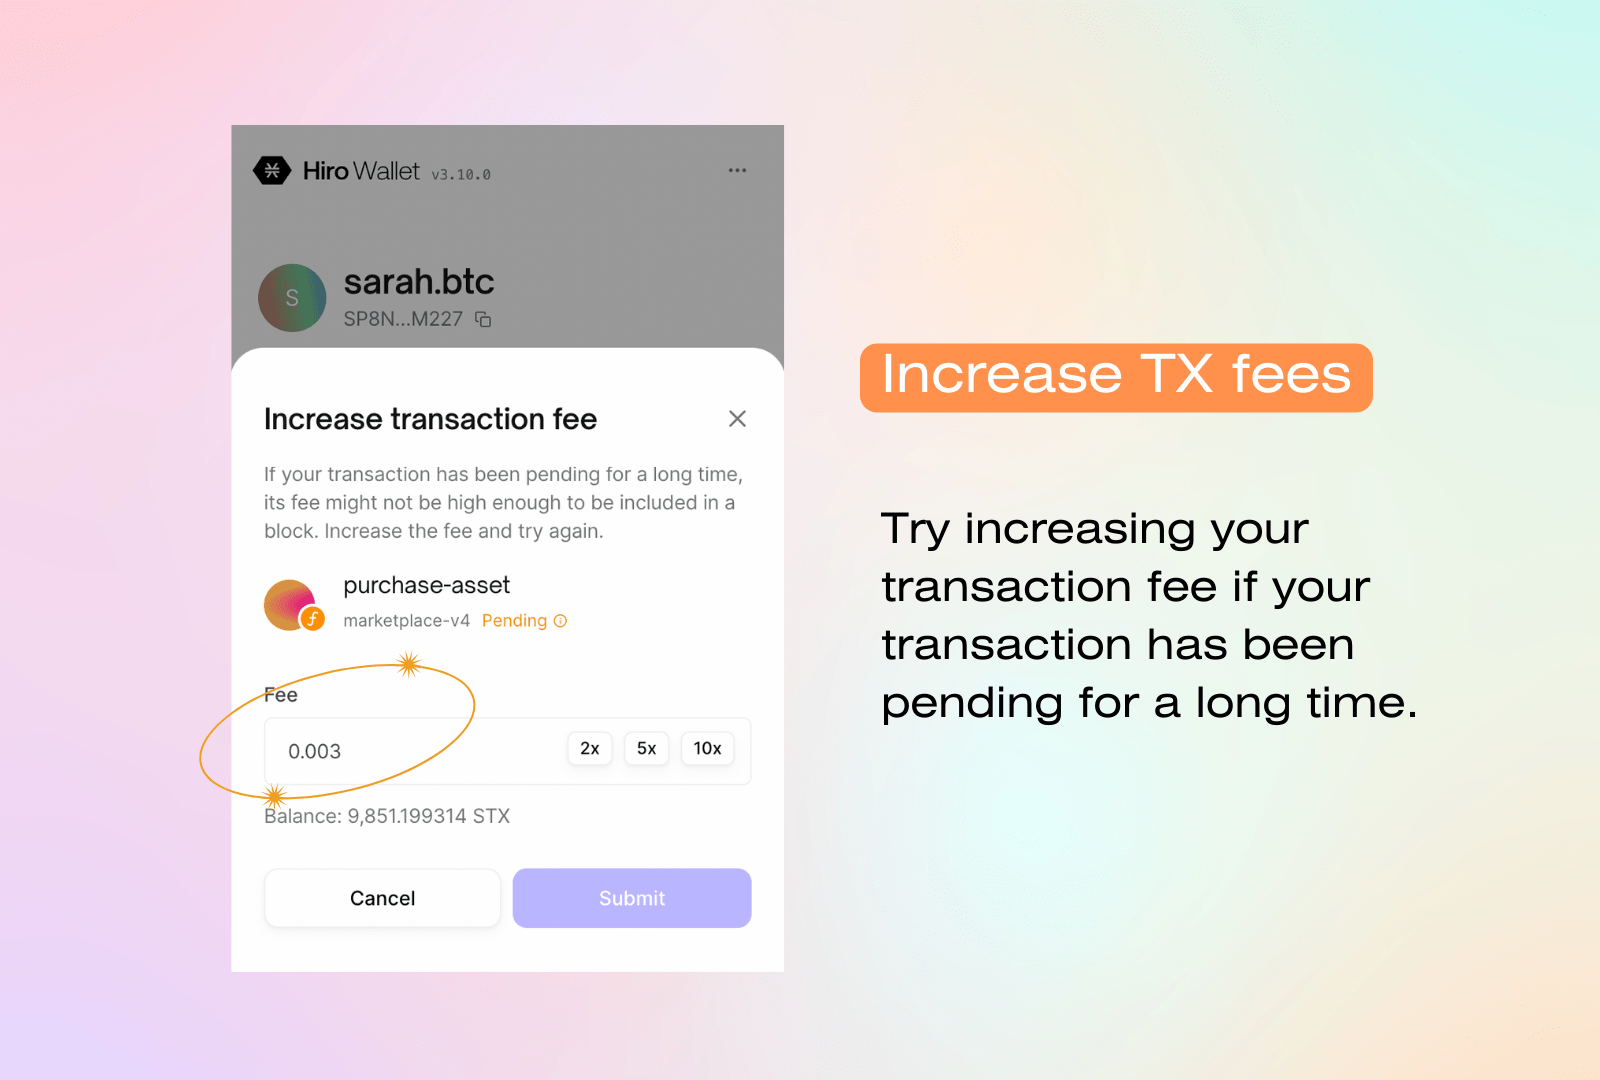 Increase TX fees